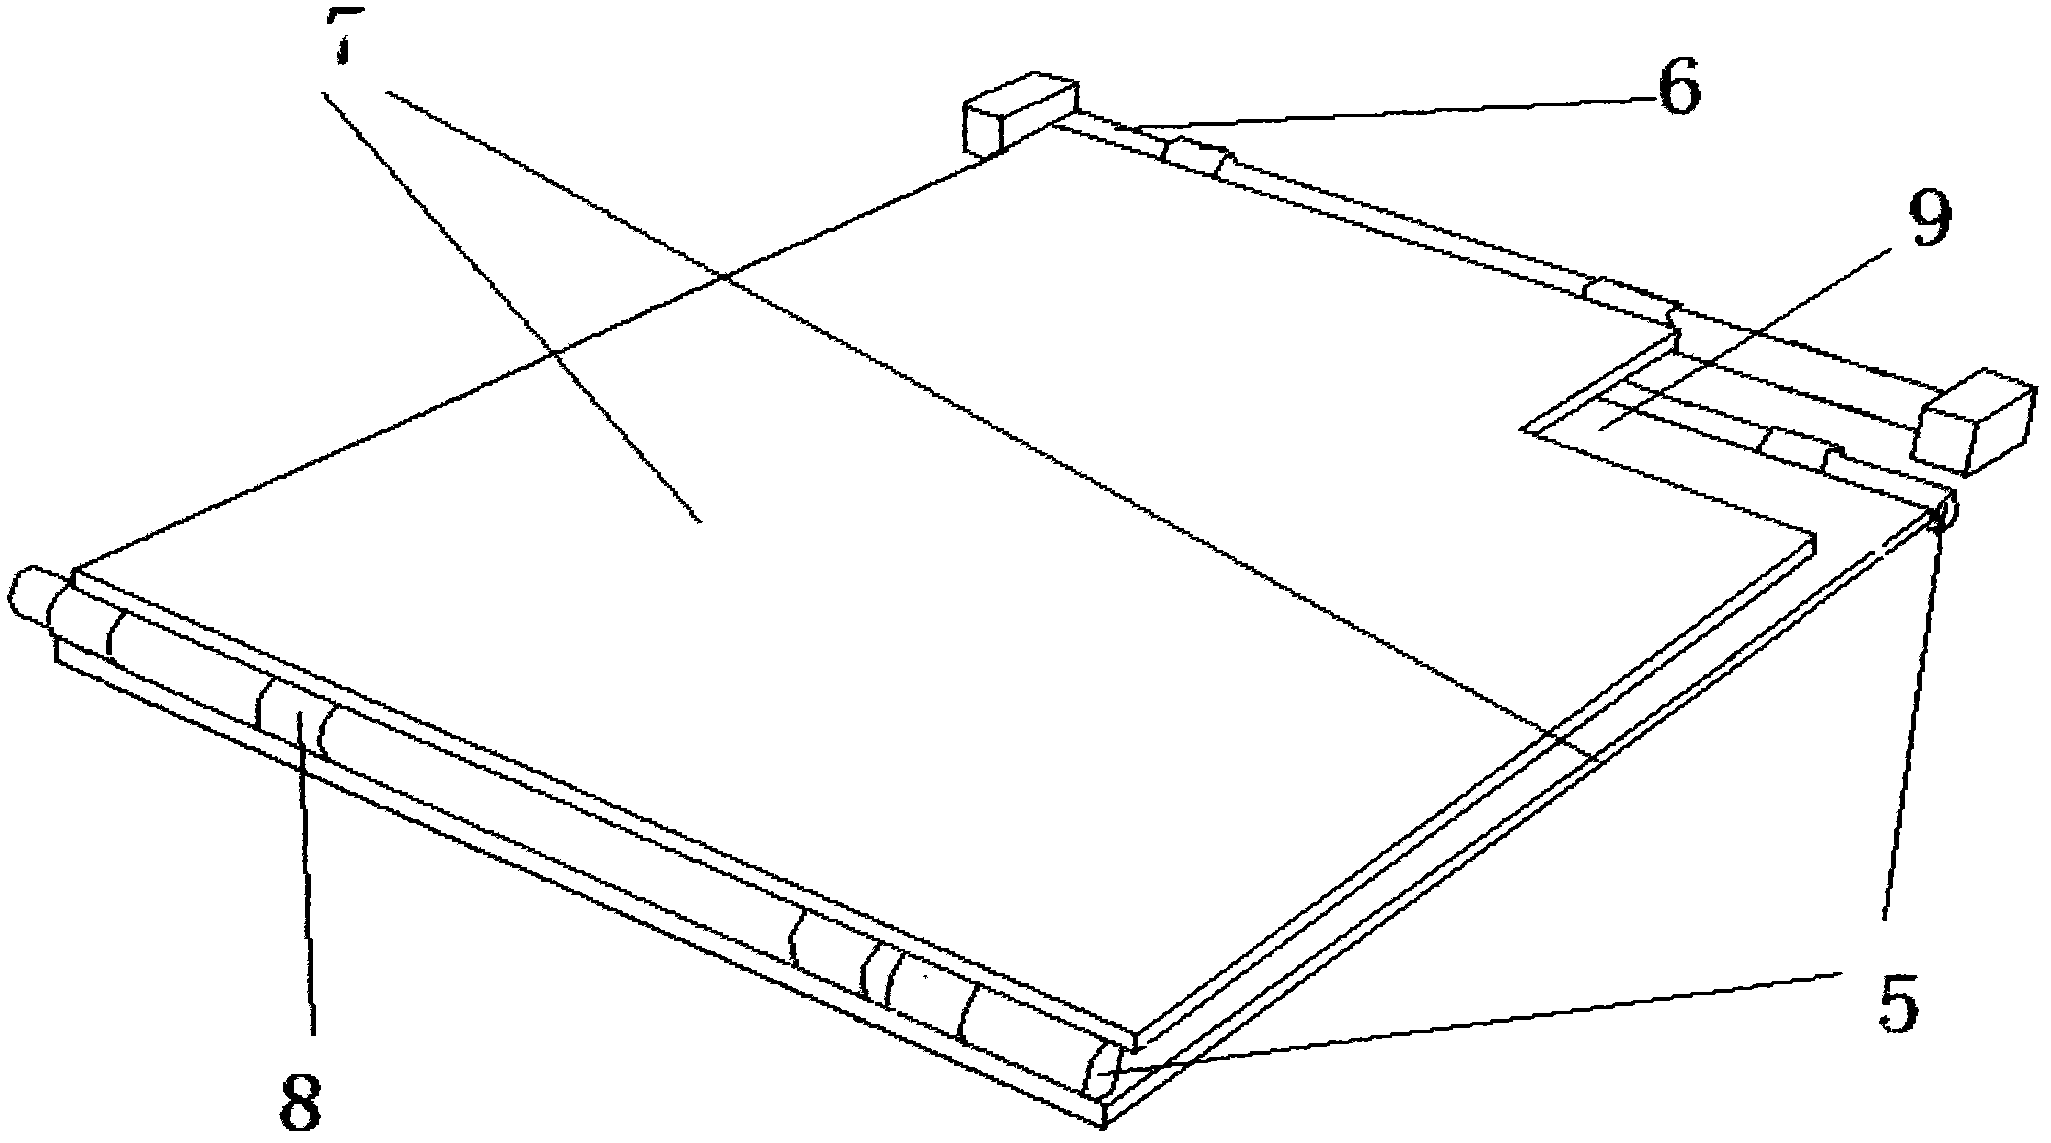 Folding type double-board piglet incubator body